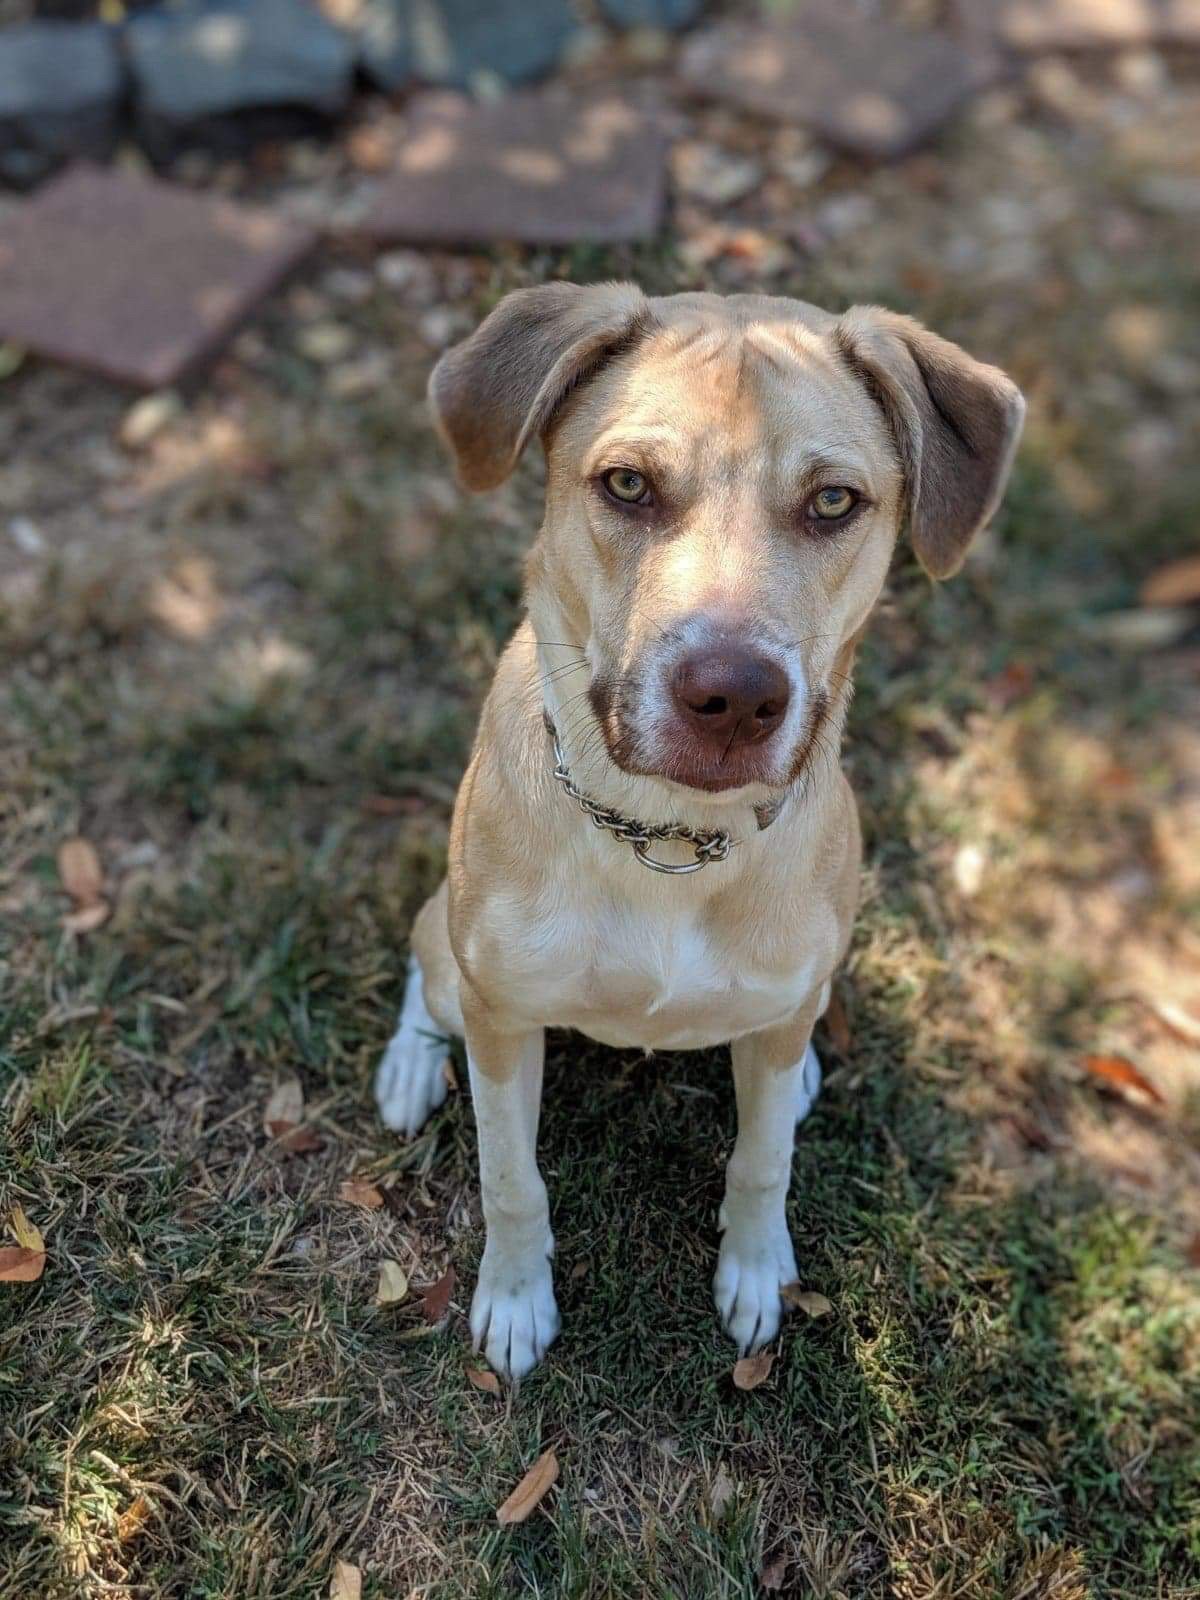 adoptable Dog in Greensboro, NC named Deacon